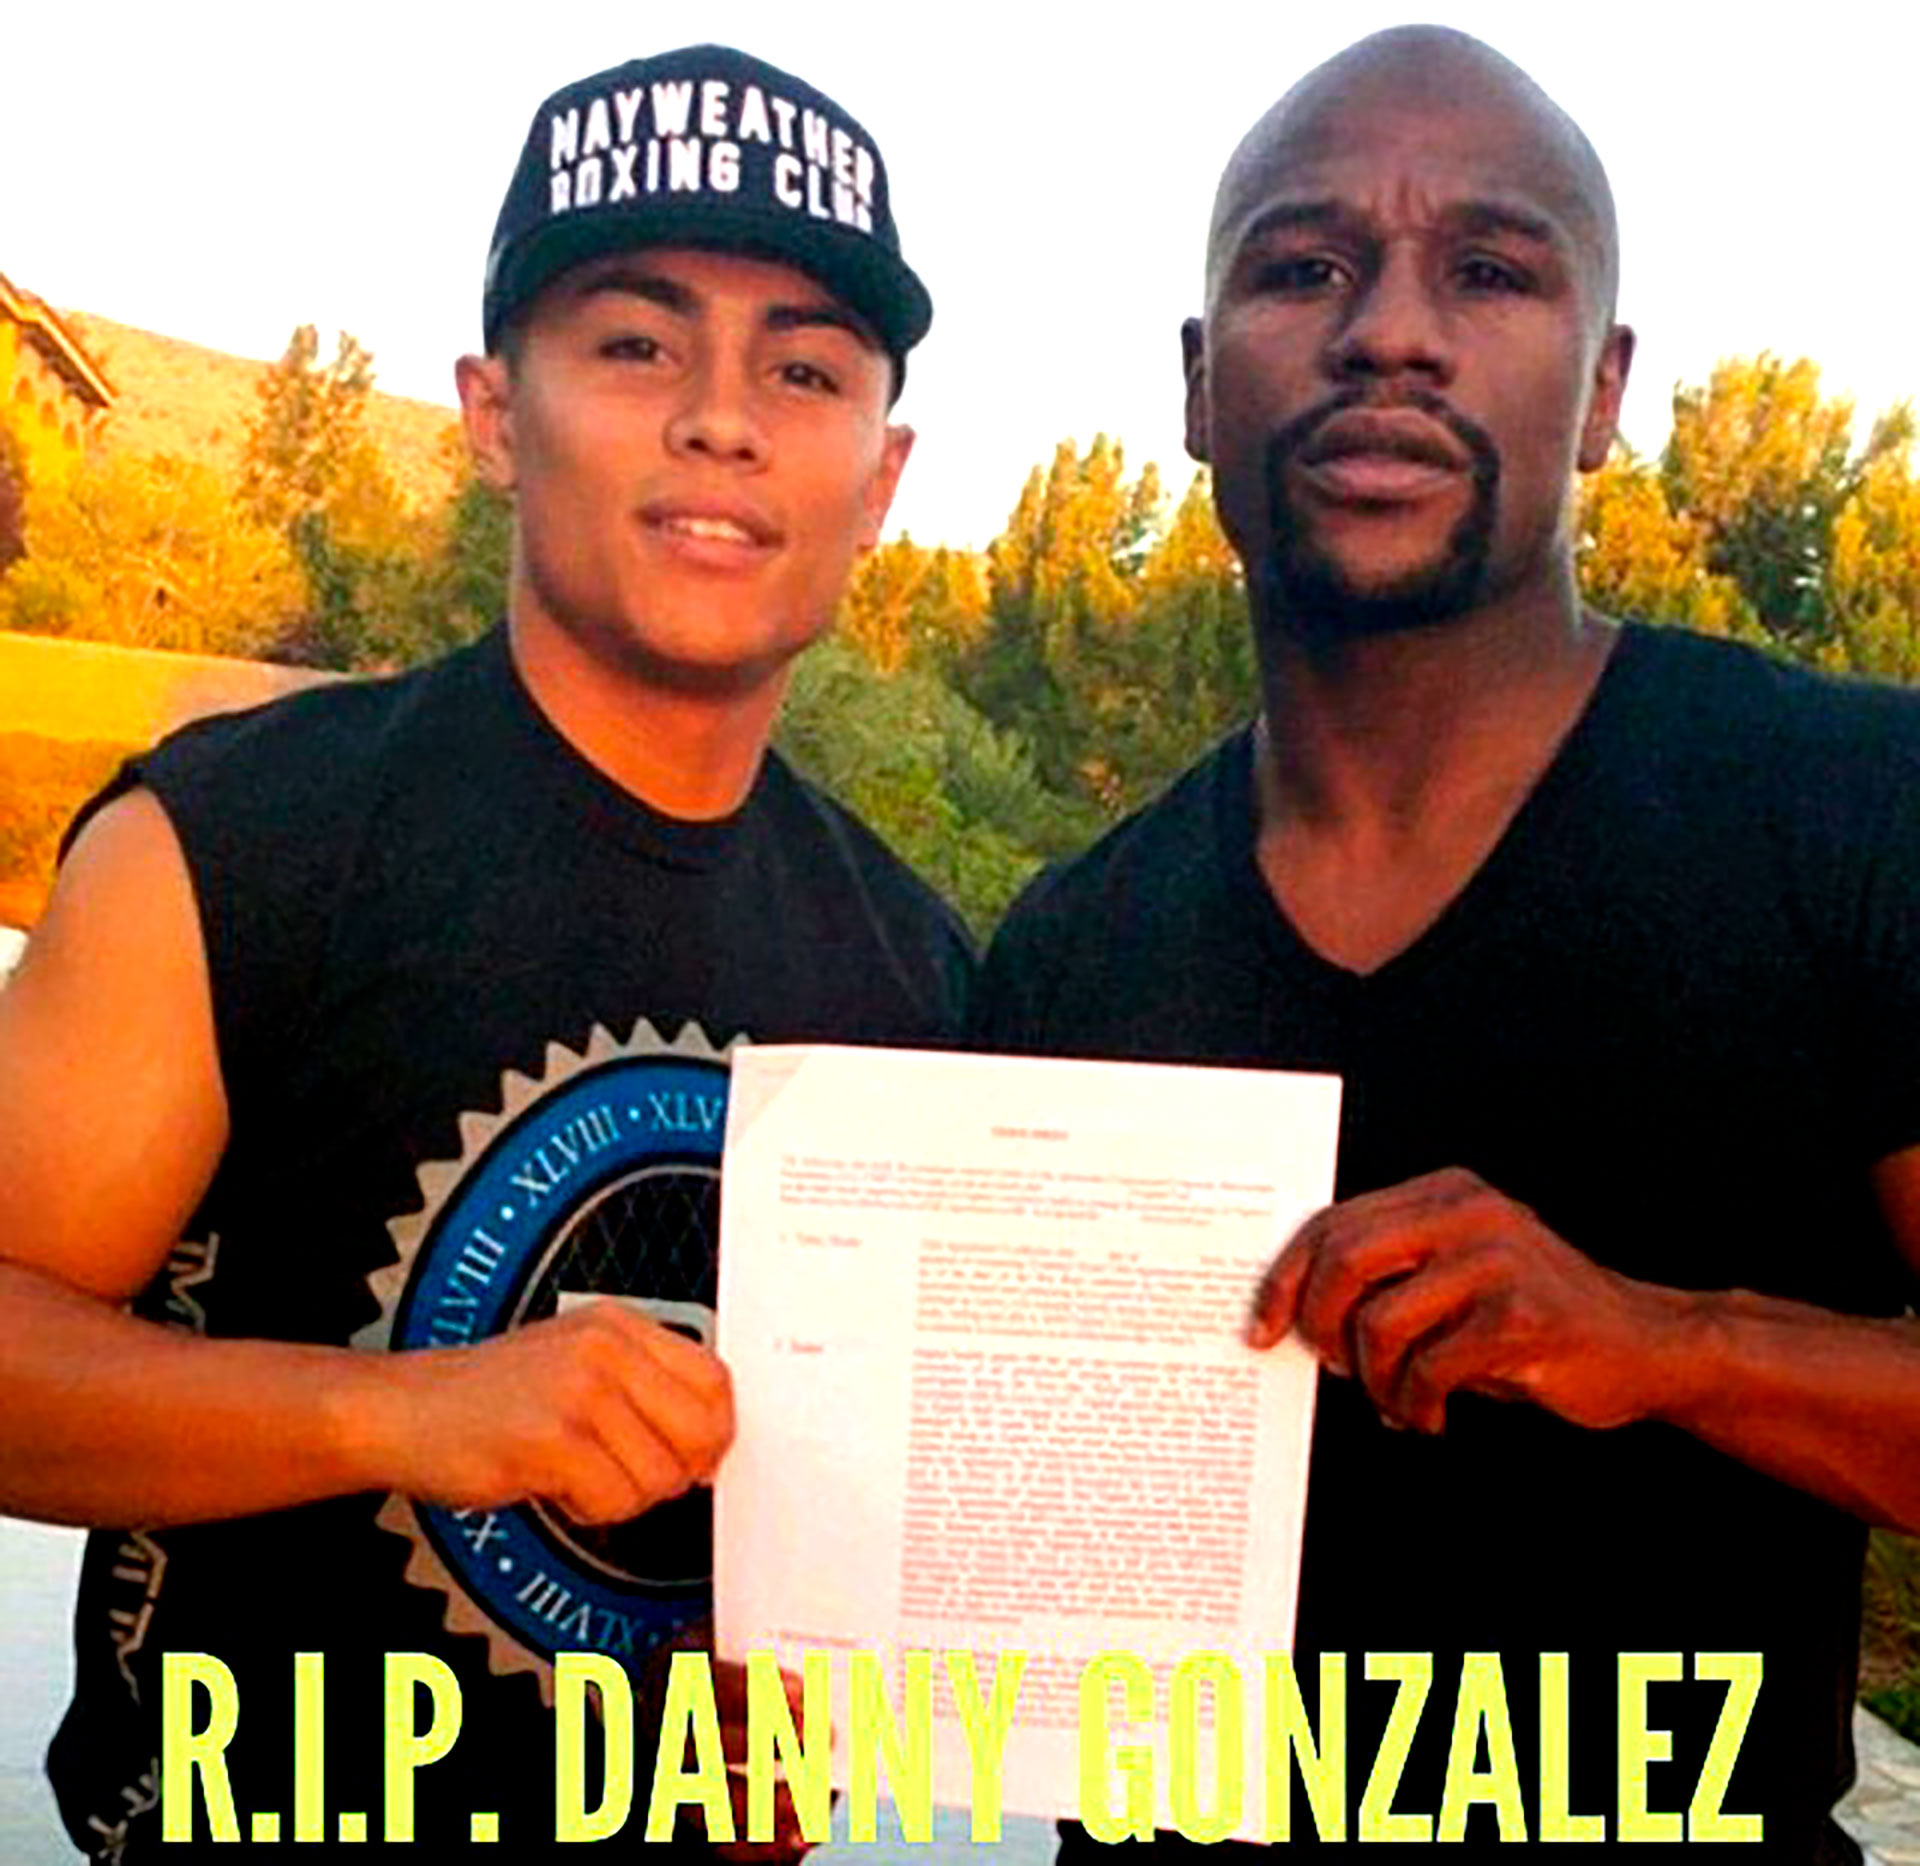 La imagen que usó Floyd Mayweather en redes sociales para despedir a Danny Gonzalez (@floydmayweather)